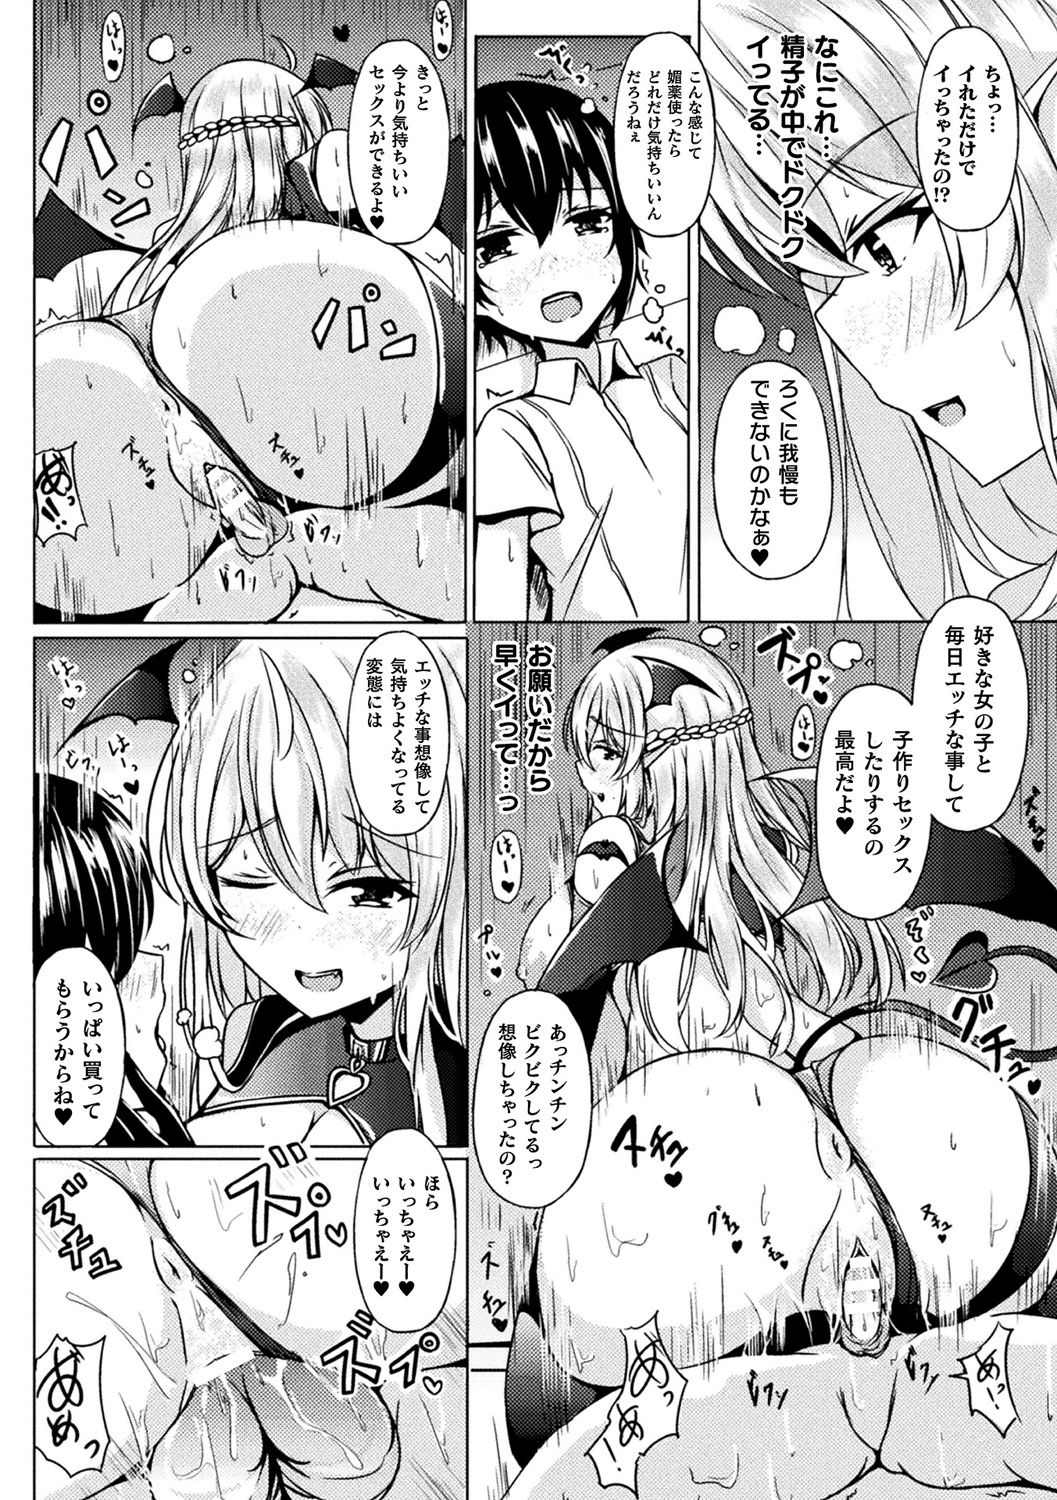 [Anthology] Bessatsu Comic Unreal Ponkotsu Fantasy Heroine H ~Doji o Funde Gyakuten Saretari Ero Trap ni Hamattari!?~ Vol. 2 [Digital] page 31 full